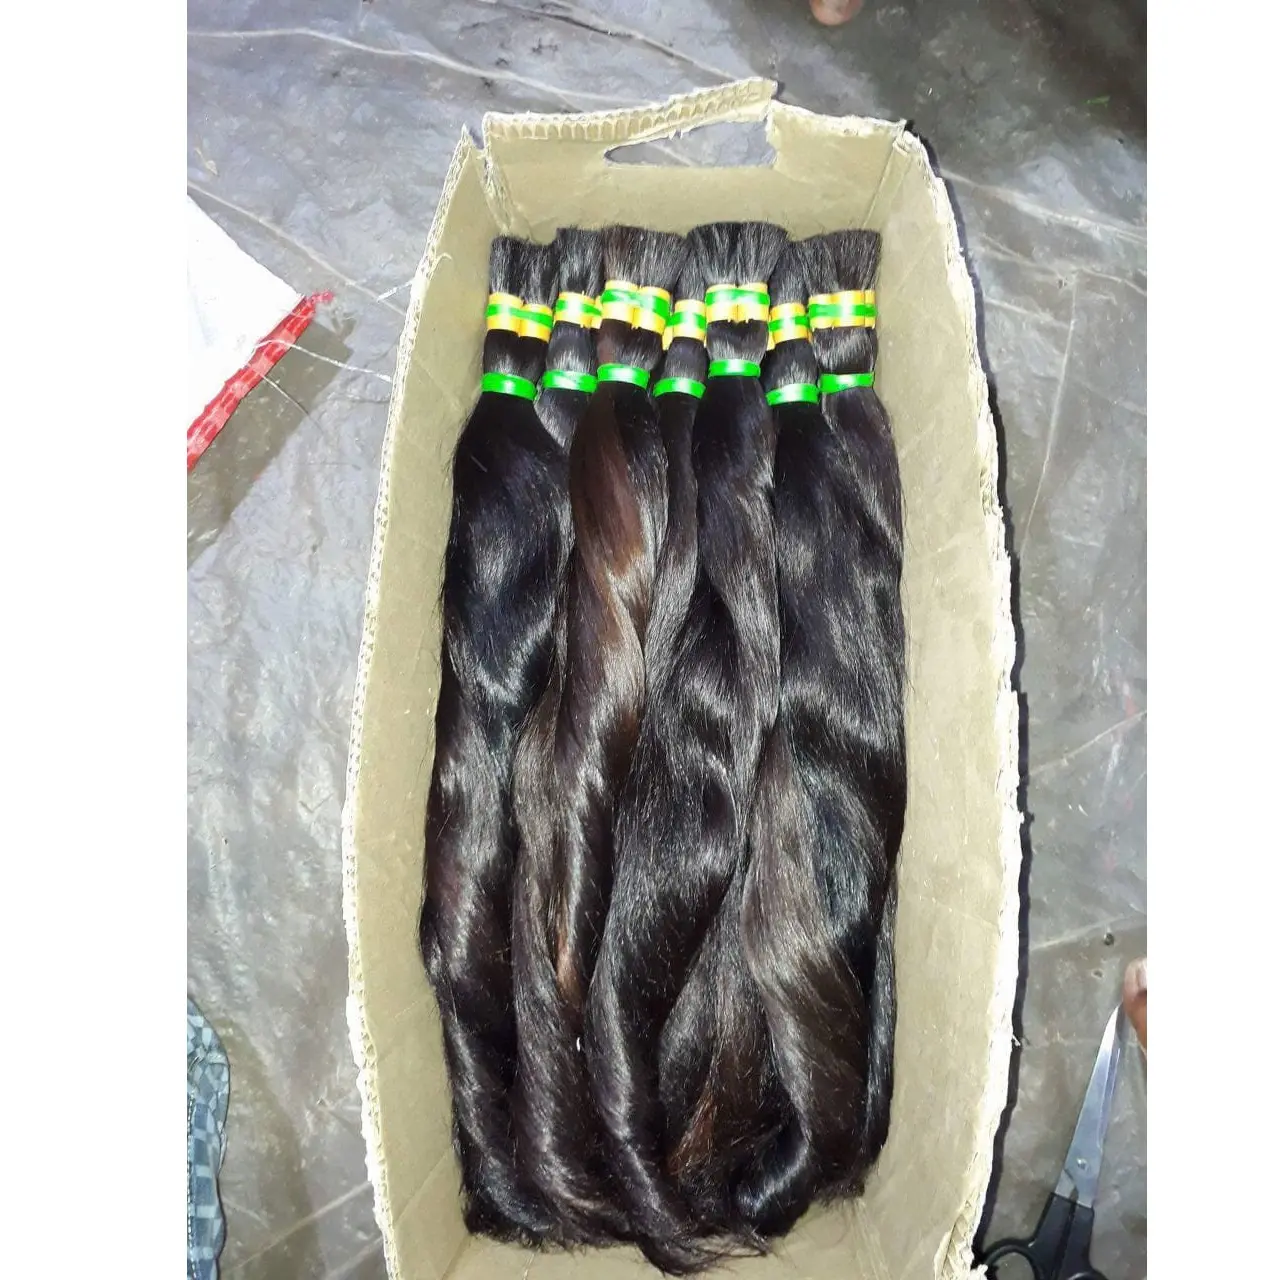 100% raw virgin não transformados cabelo humano em massa macia e suave de alta qualidade barato por atacado virgem volume do cabelo indiano